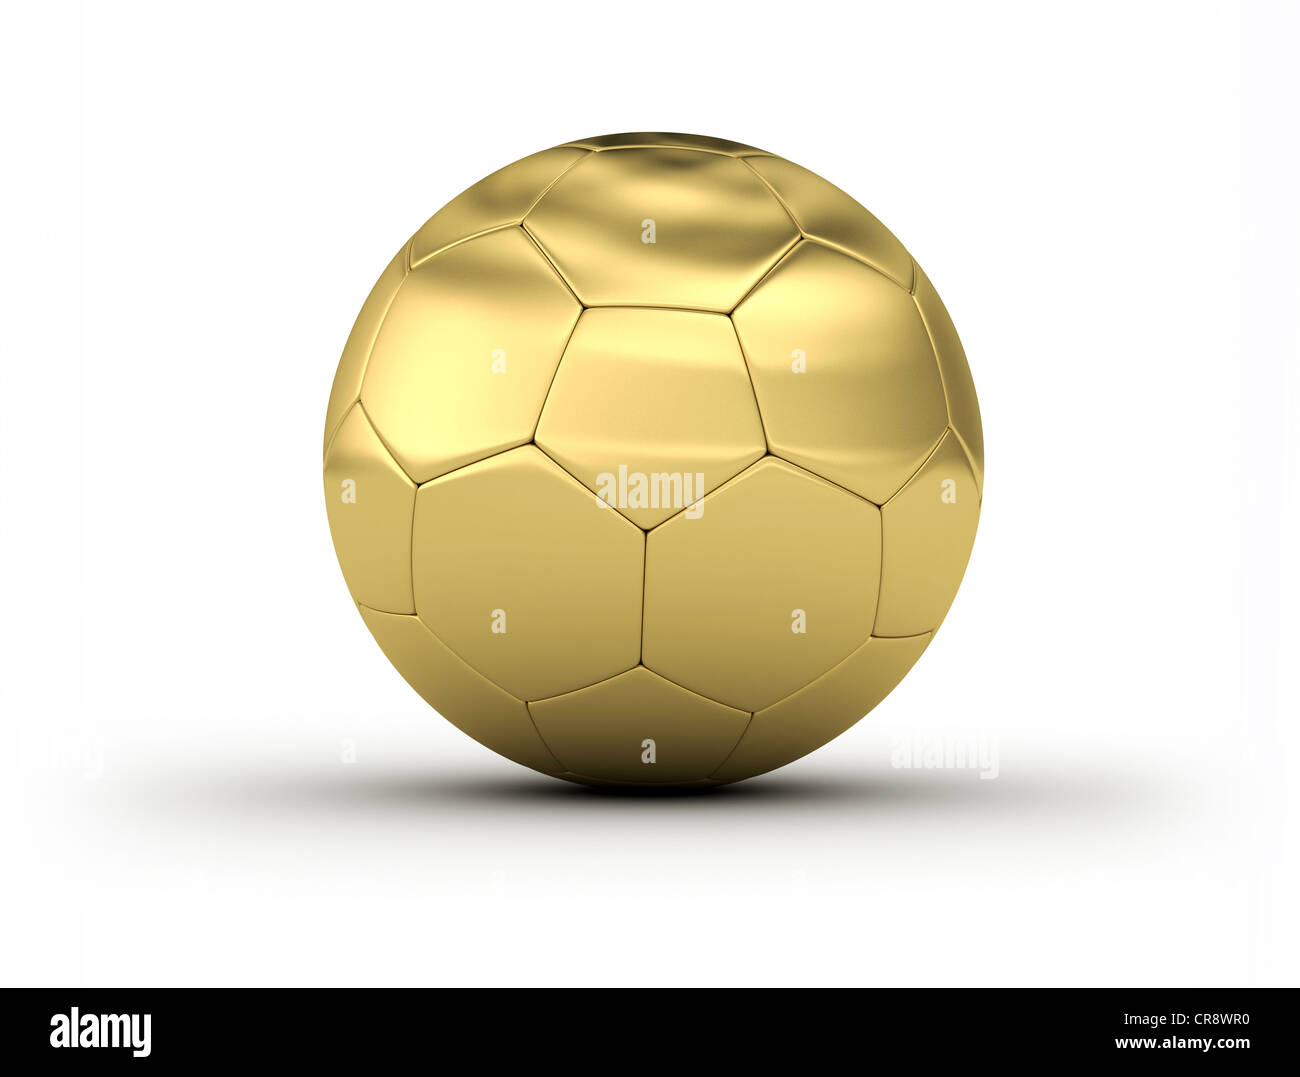 Golden Soccer Ball on white background Stock Photo